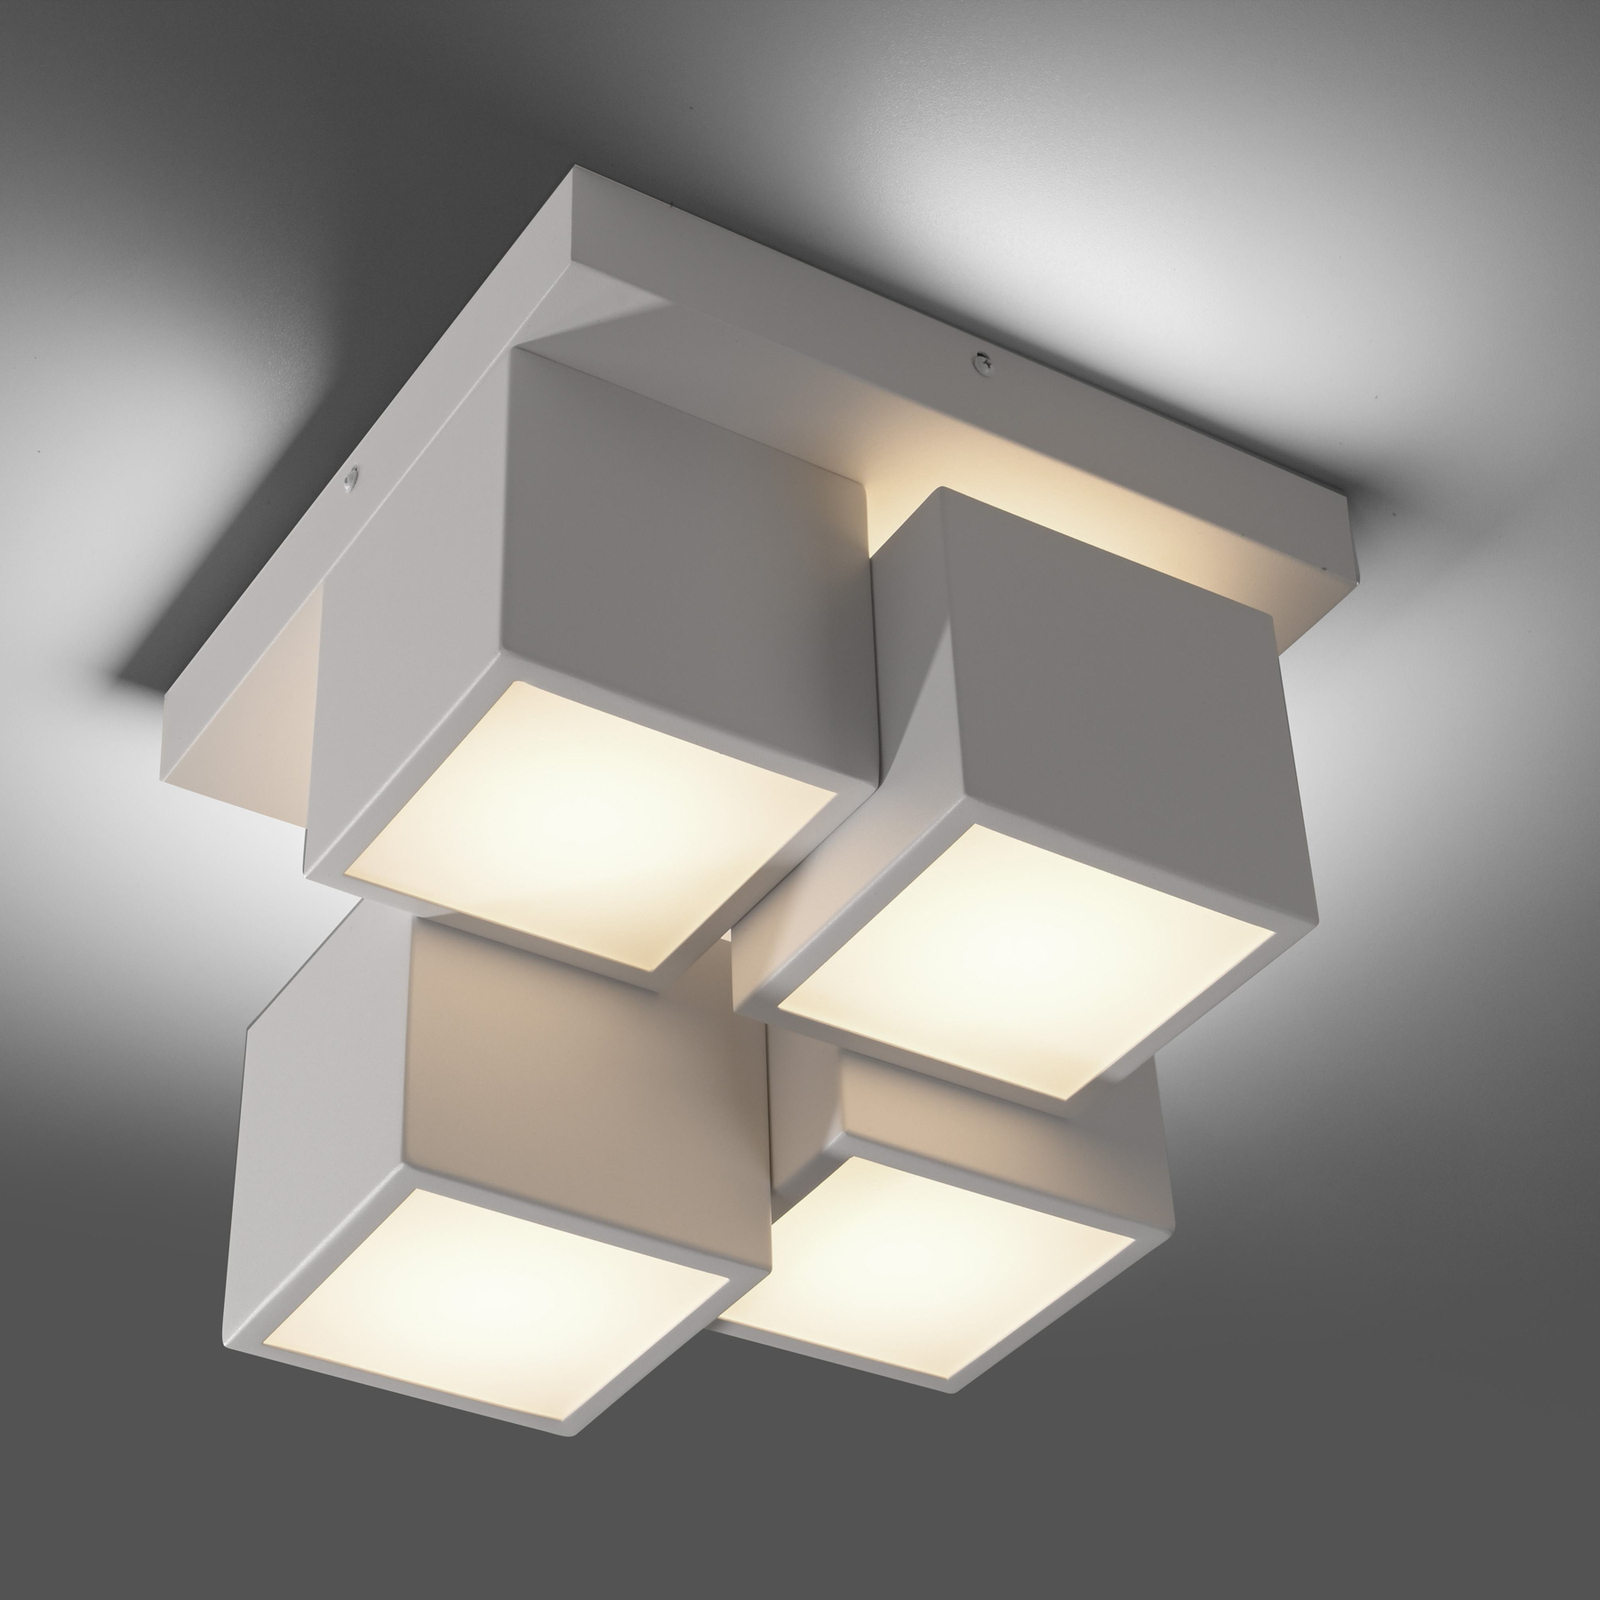 JUST LIGHT. LED lubinis šviestuvas "Tetris", geležis, 3 000 K, baltas